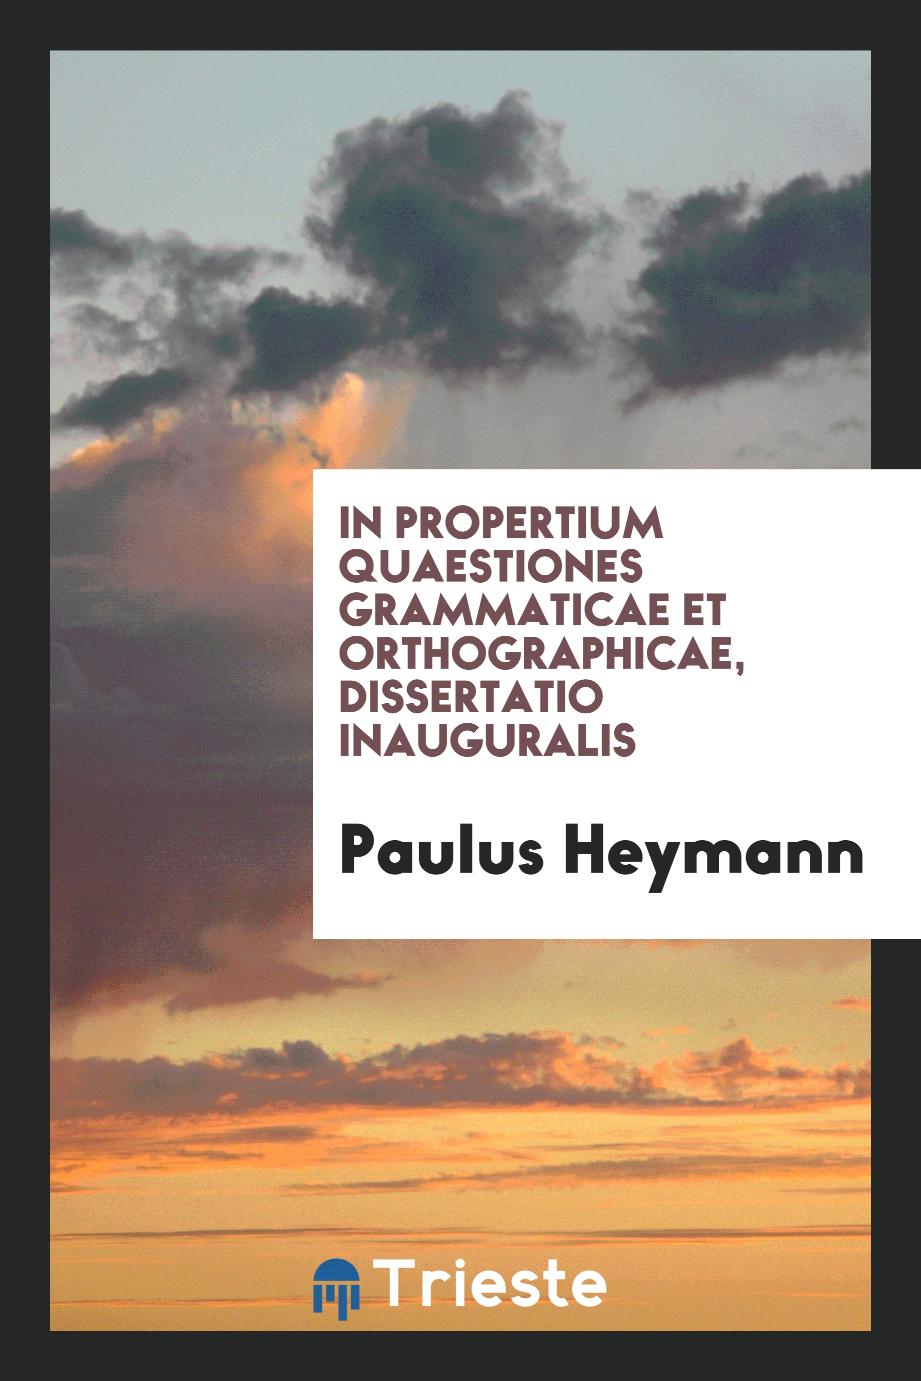 In Propertium quaestiones grammaticae et orthographicae, dissertatio inauguralis